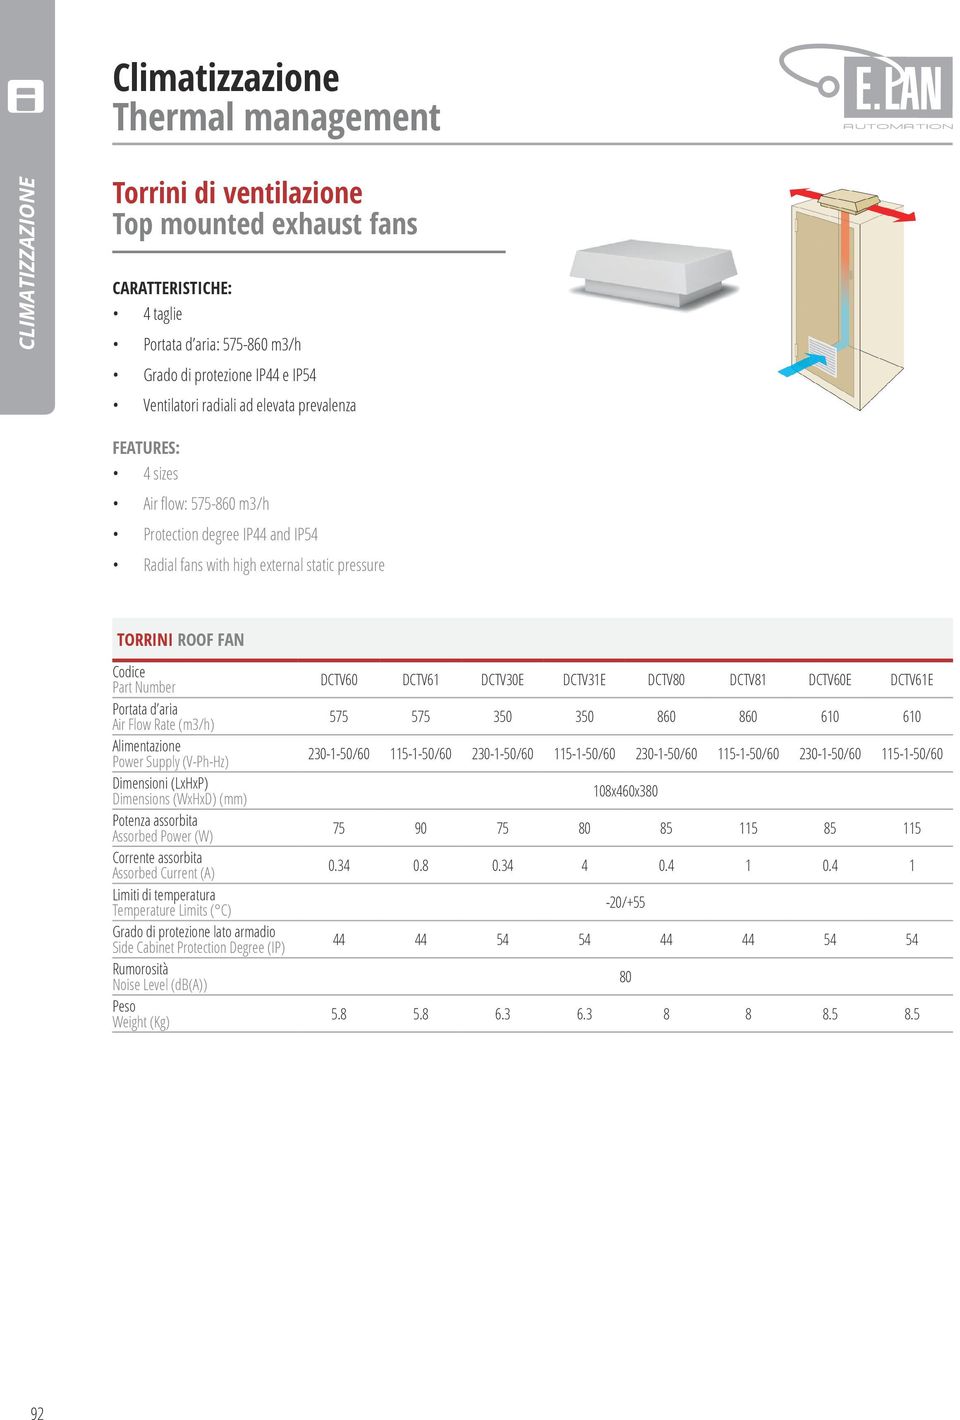 (LxHxP) Dimensions (WxHxD) (mm) Potenza assorbita Assorbed Power (W) Corrente assorbita Assorbed Current (A) Limiti di temperatura Temperature Limits ( C) Grado di protezione lato armadio de Cabinet